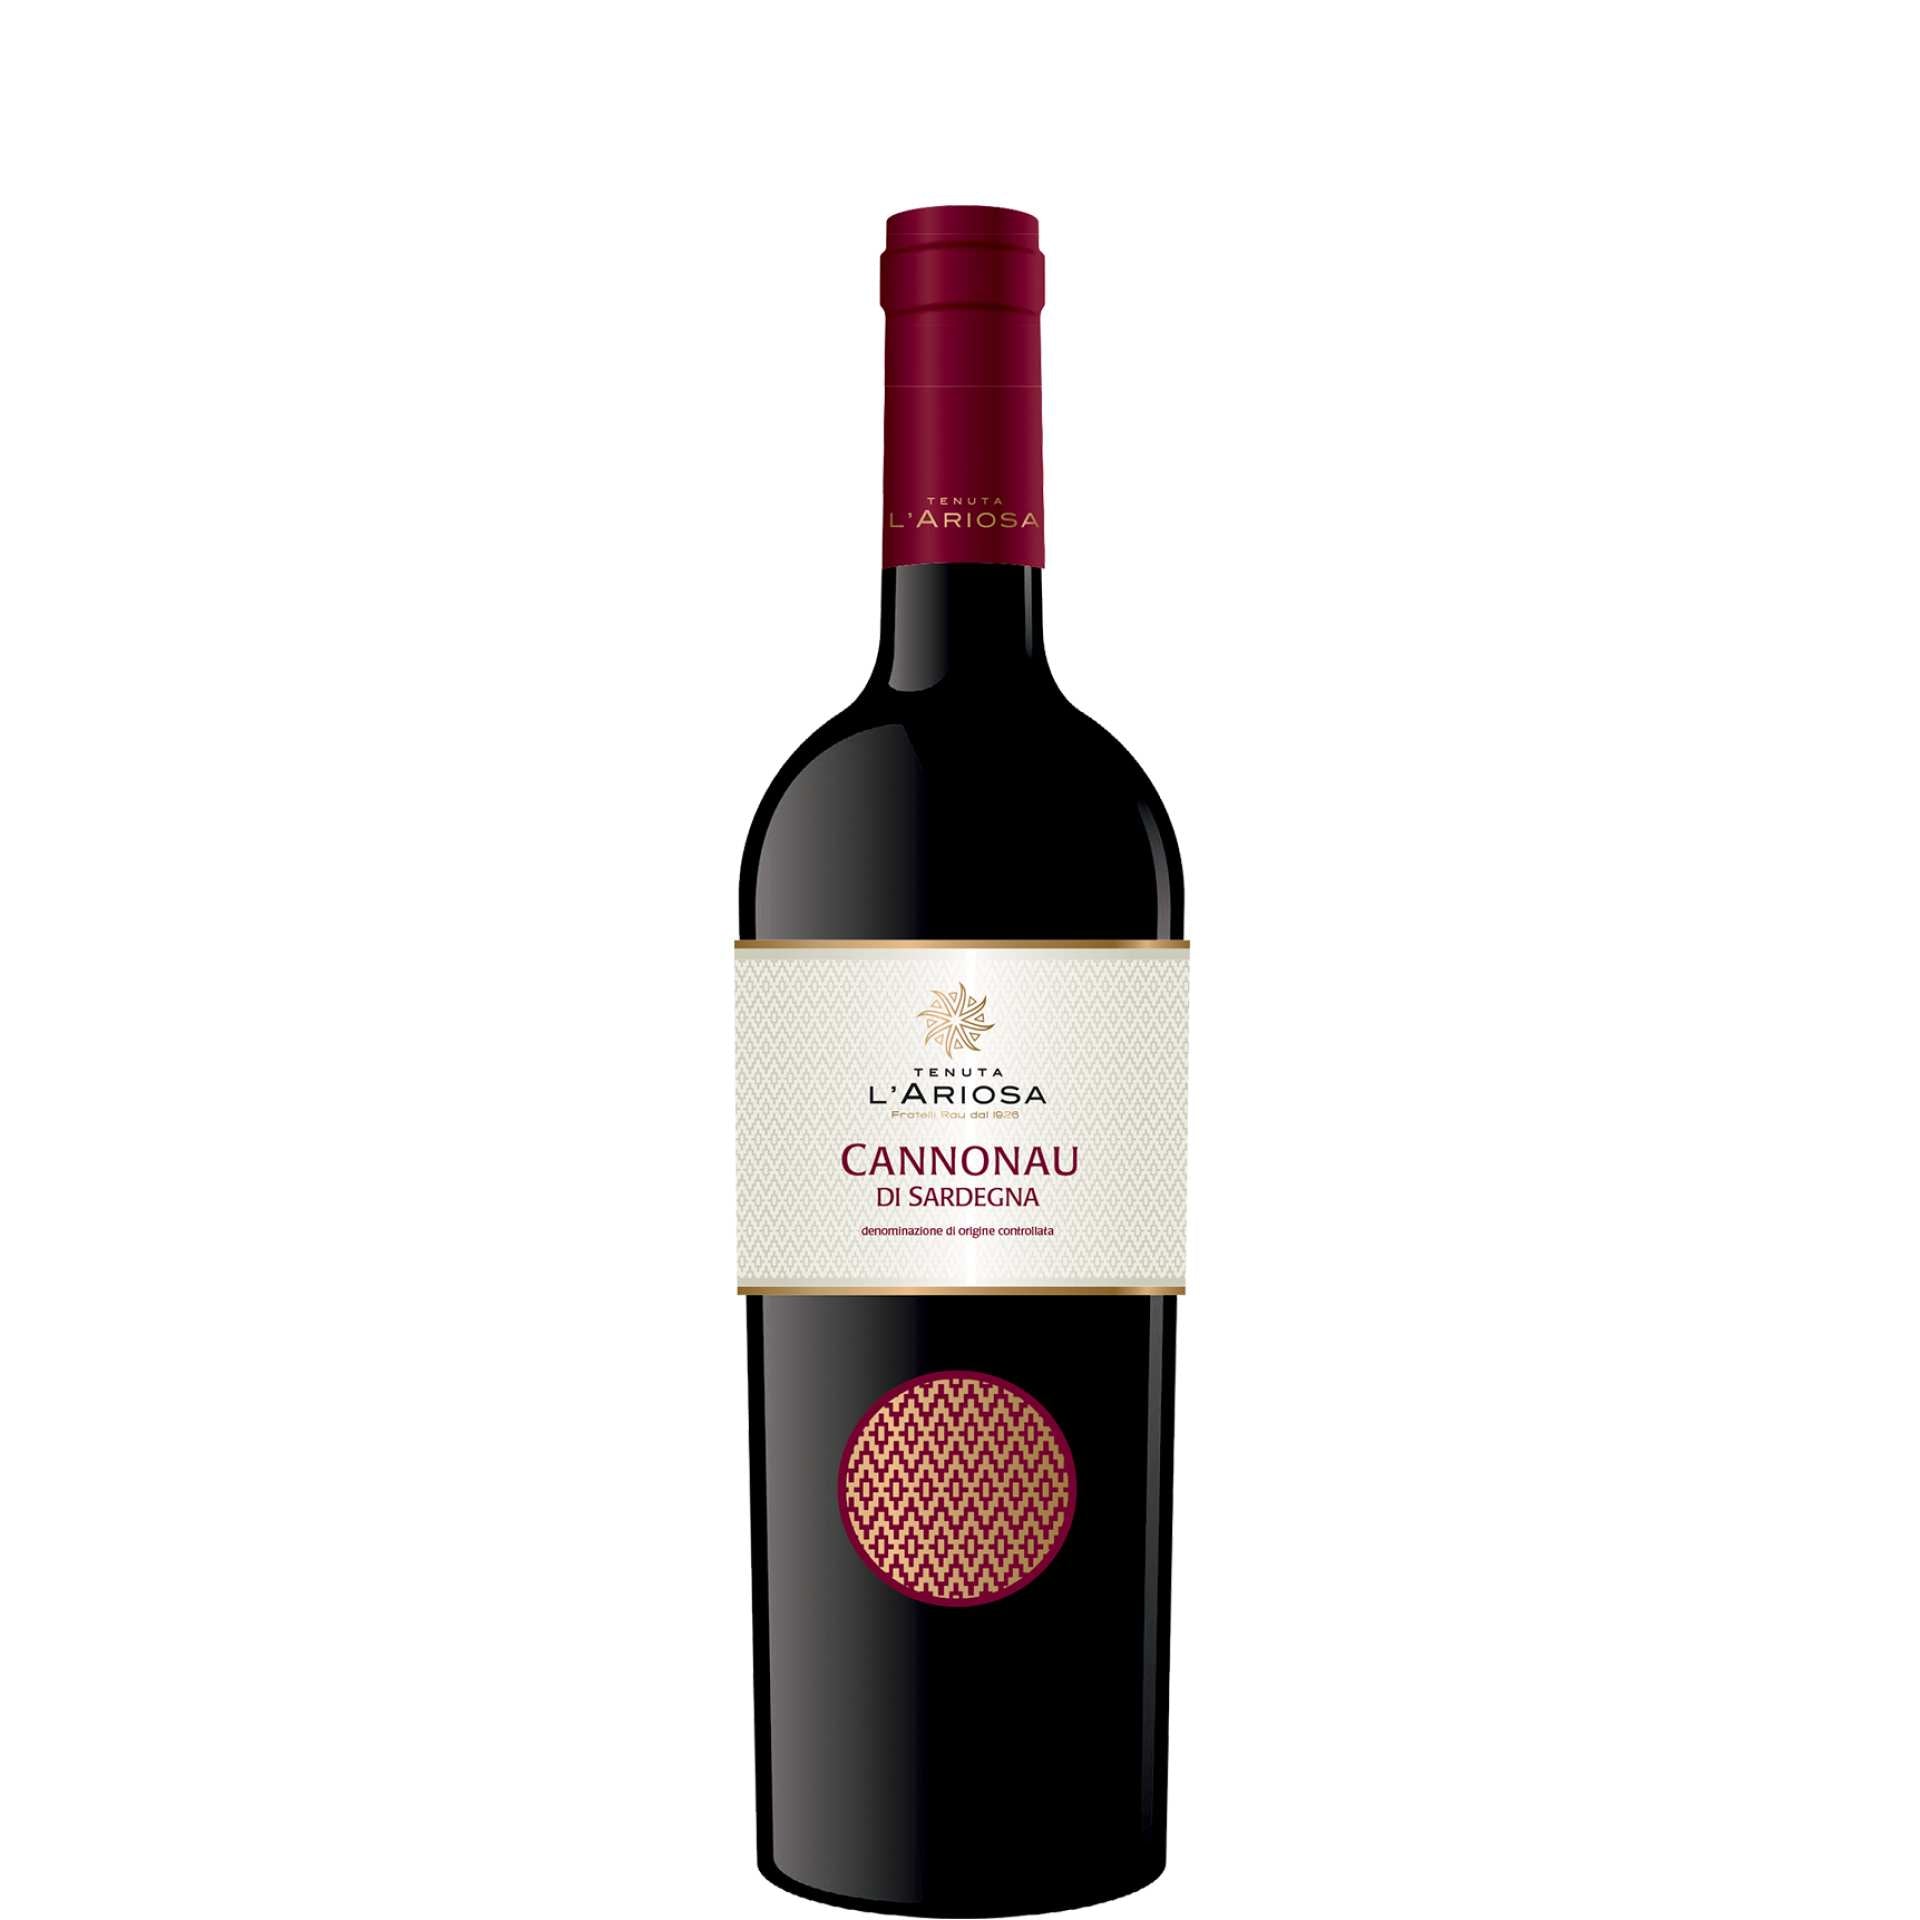 Cannonau Tenuta L'Ariosa vino rosso Sardegna